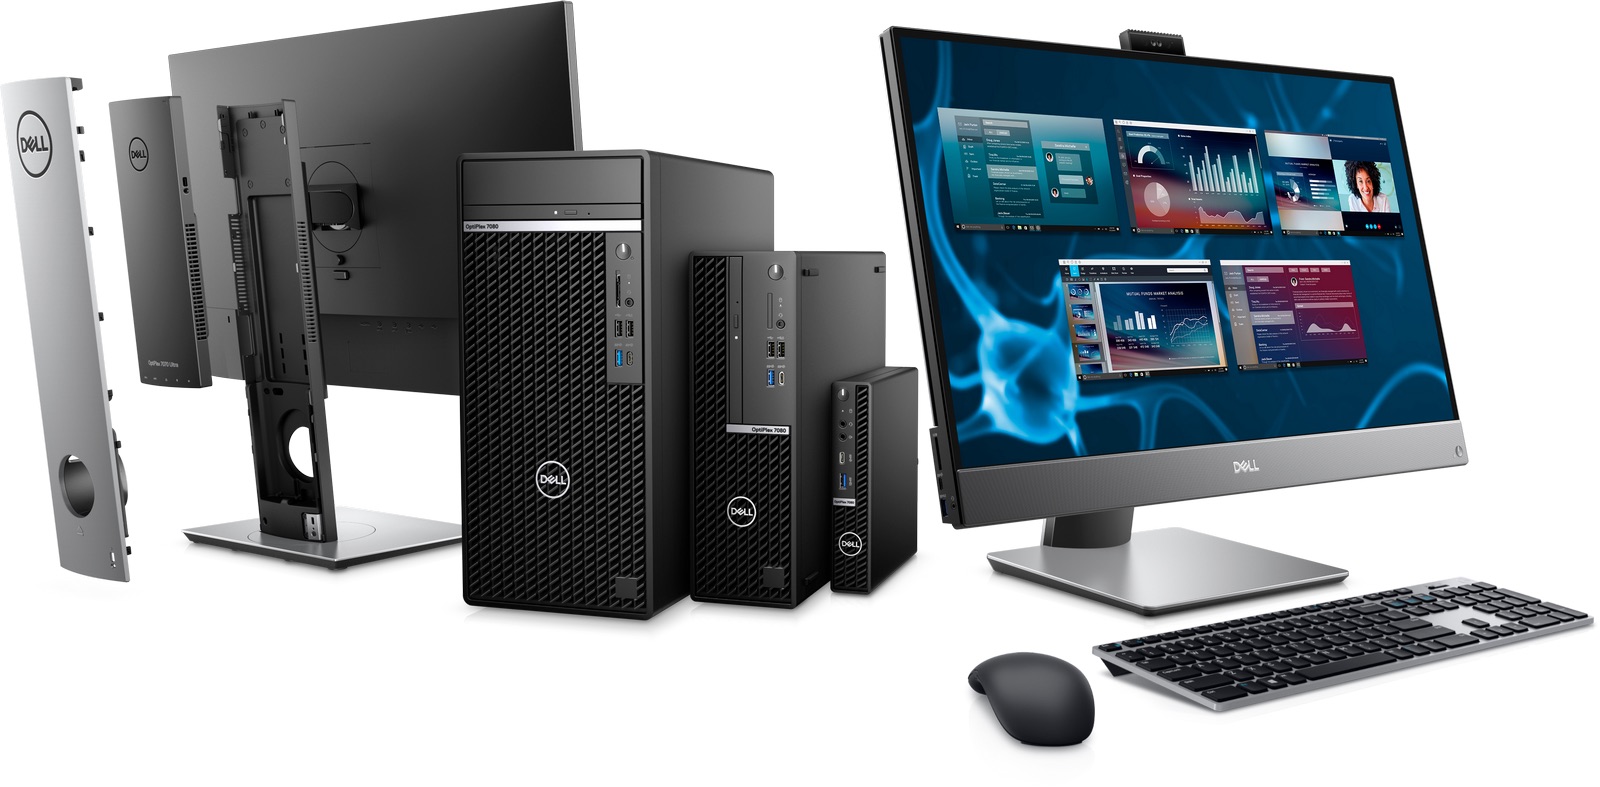 Dell ra mắt mẫu laptop và PC cập nhật Intel core i thế hệ 10 dành cho doanh nghiệp